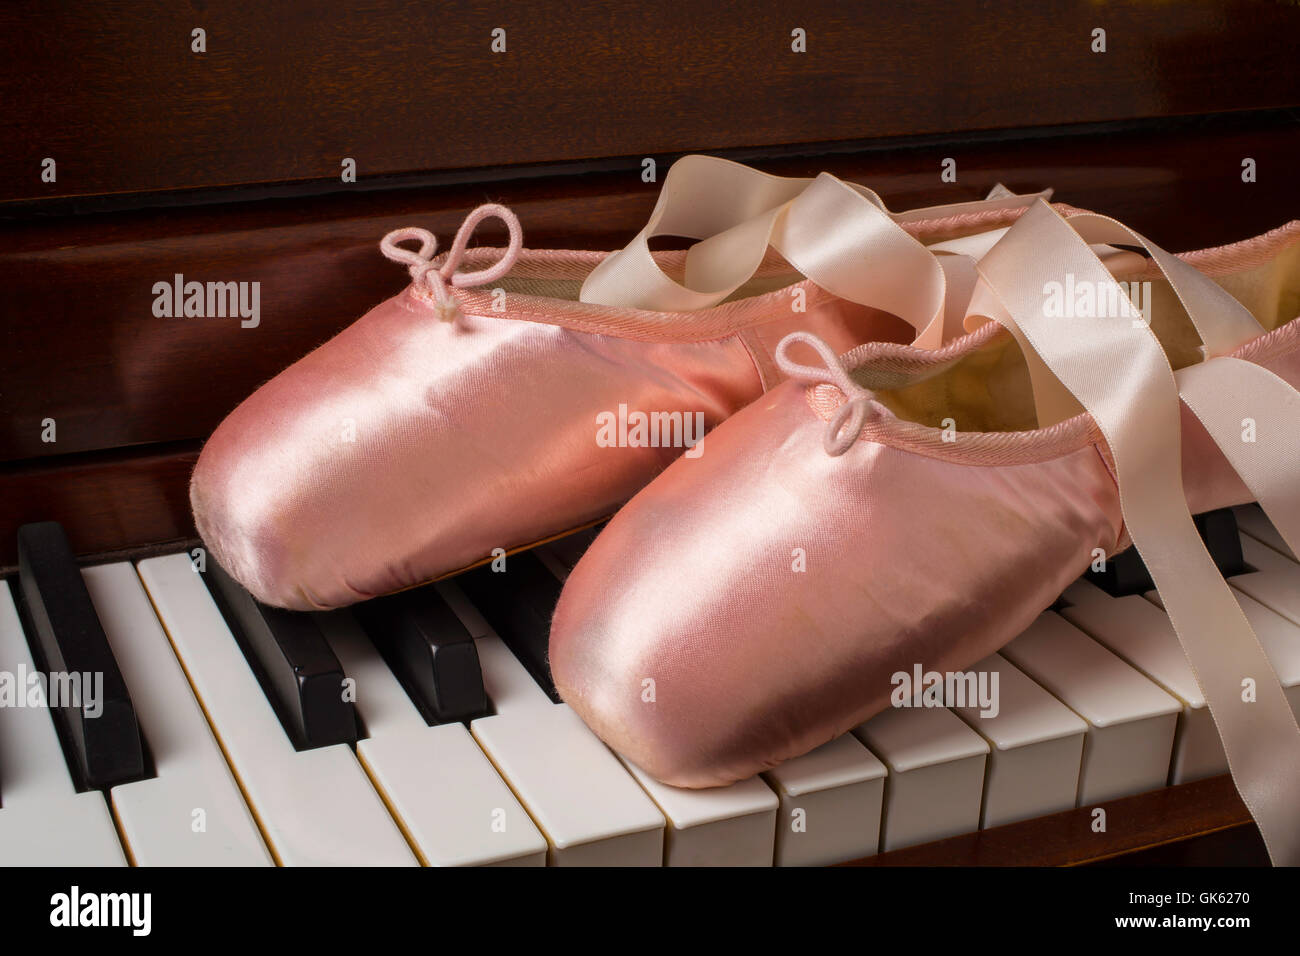 Ballet piano immagini e fotografie stock ad alta risoluzione - Alamy